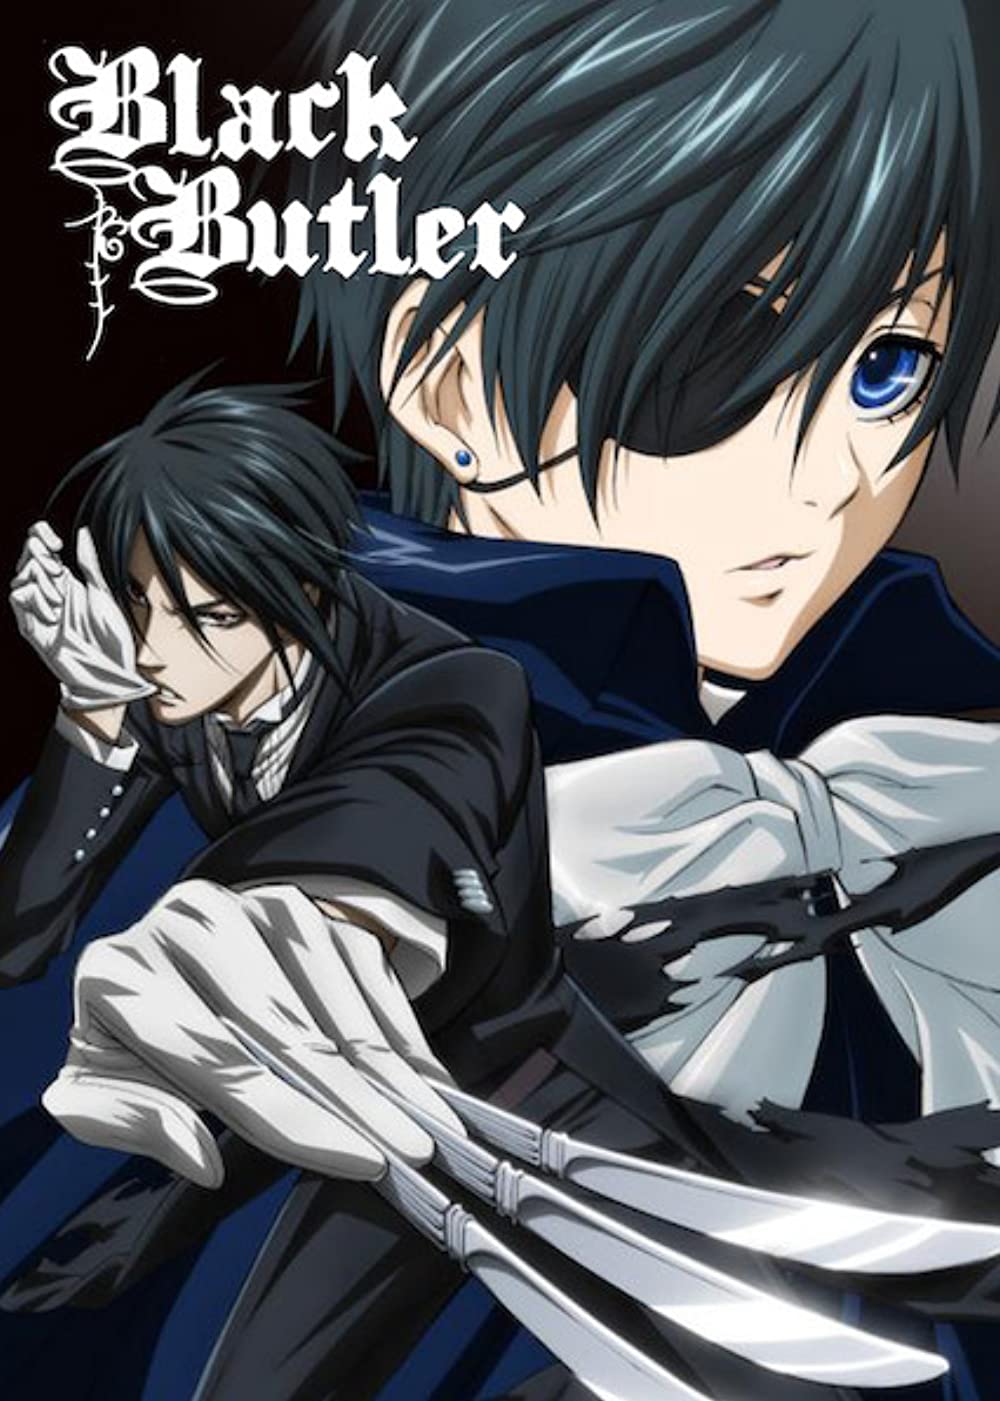 ดูหนังออนไลน์ฟรี Black Butler (2008–2010) Season 1 OVA คนลึกไขปริศนาลับ ซีซั่น 1  OVA